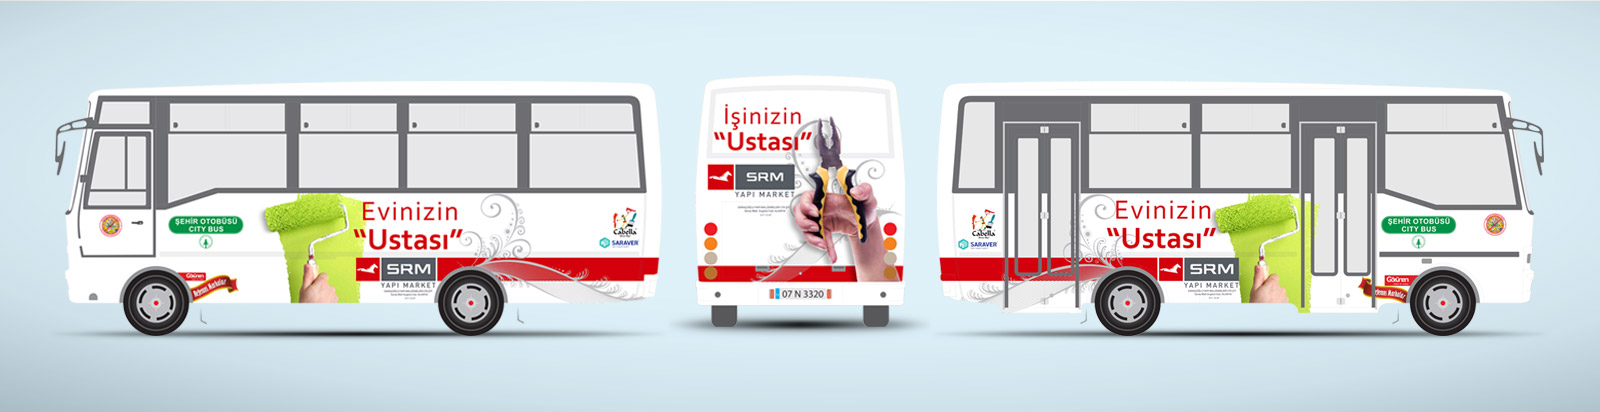 Nalbur Tanıtımı Halk Otobüsü Reklamı - SRM Yapı Marke